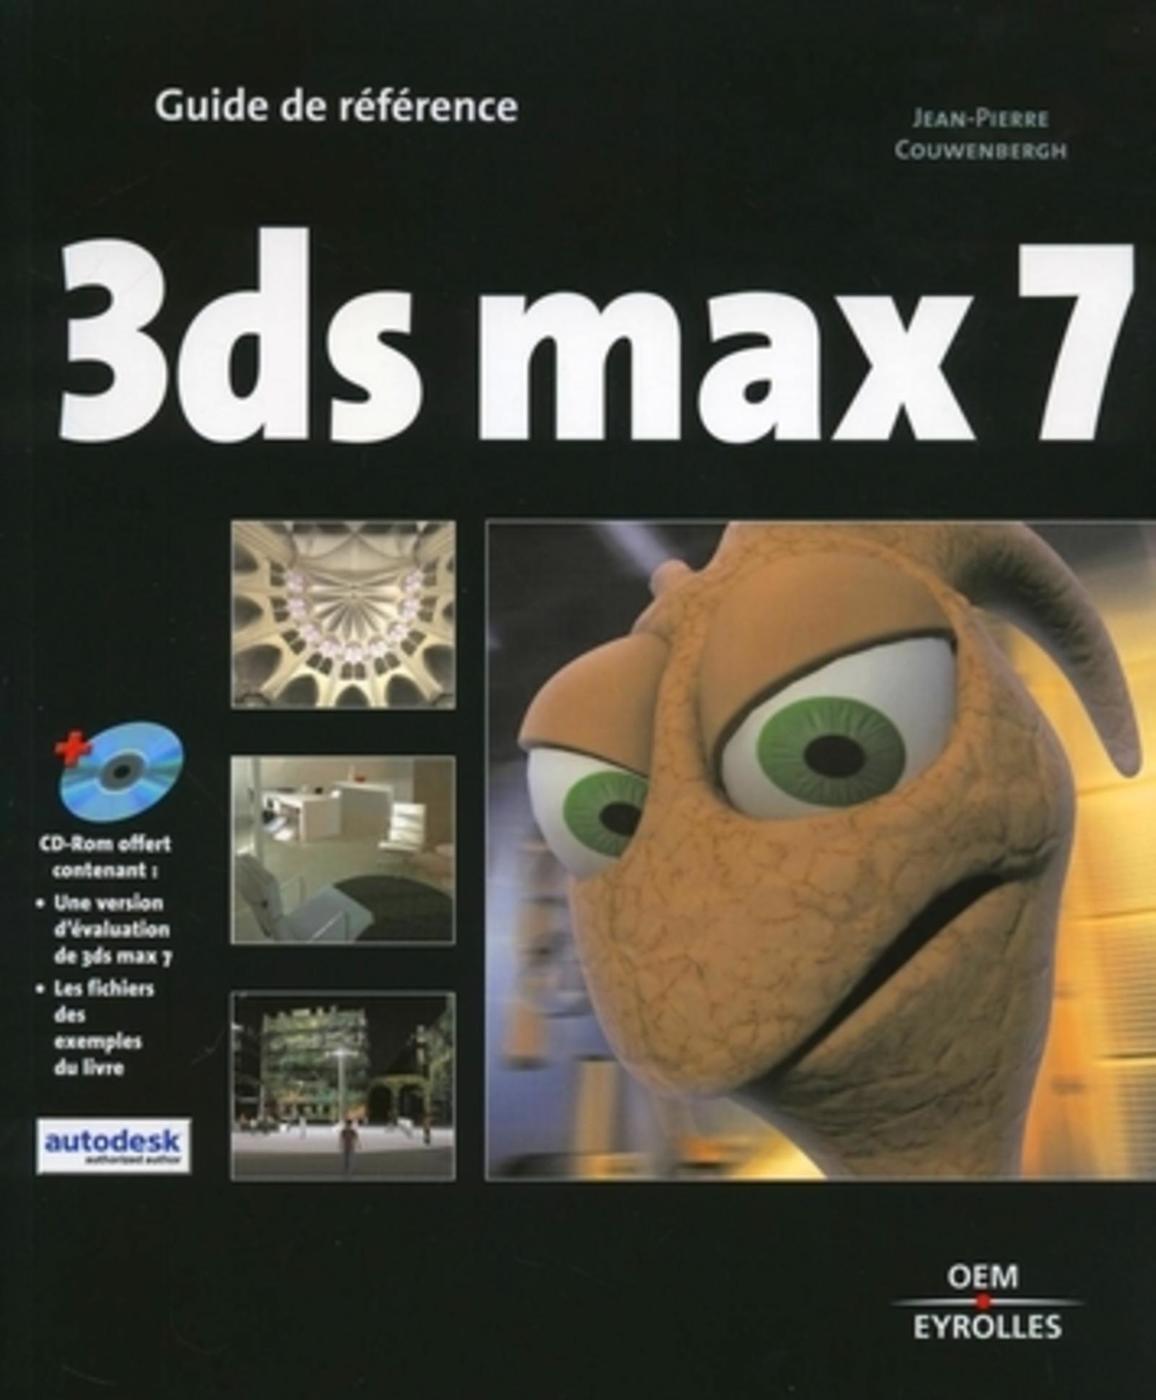 3dsmax 7